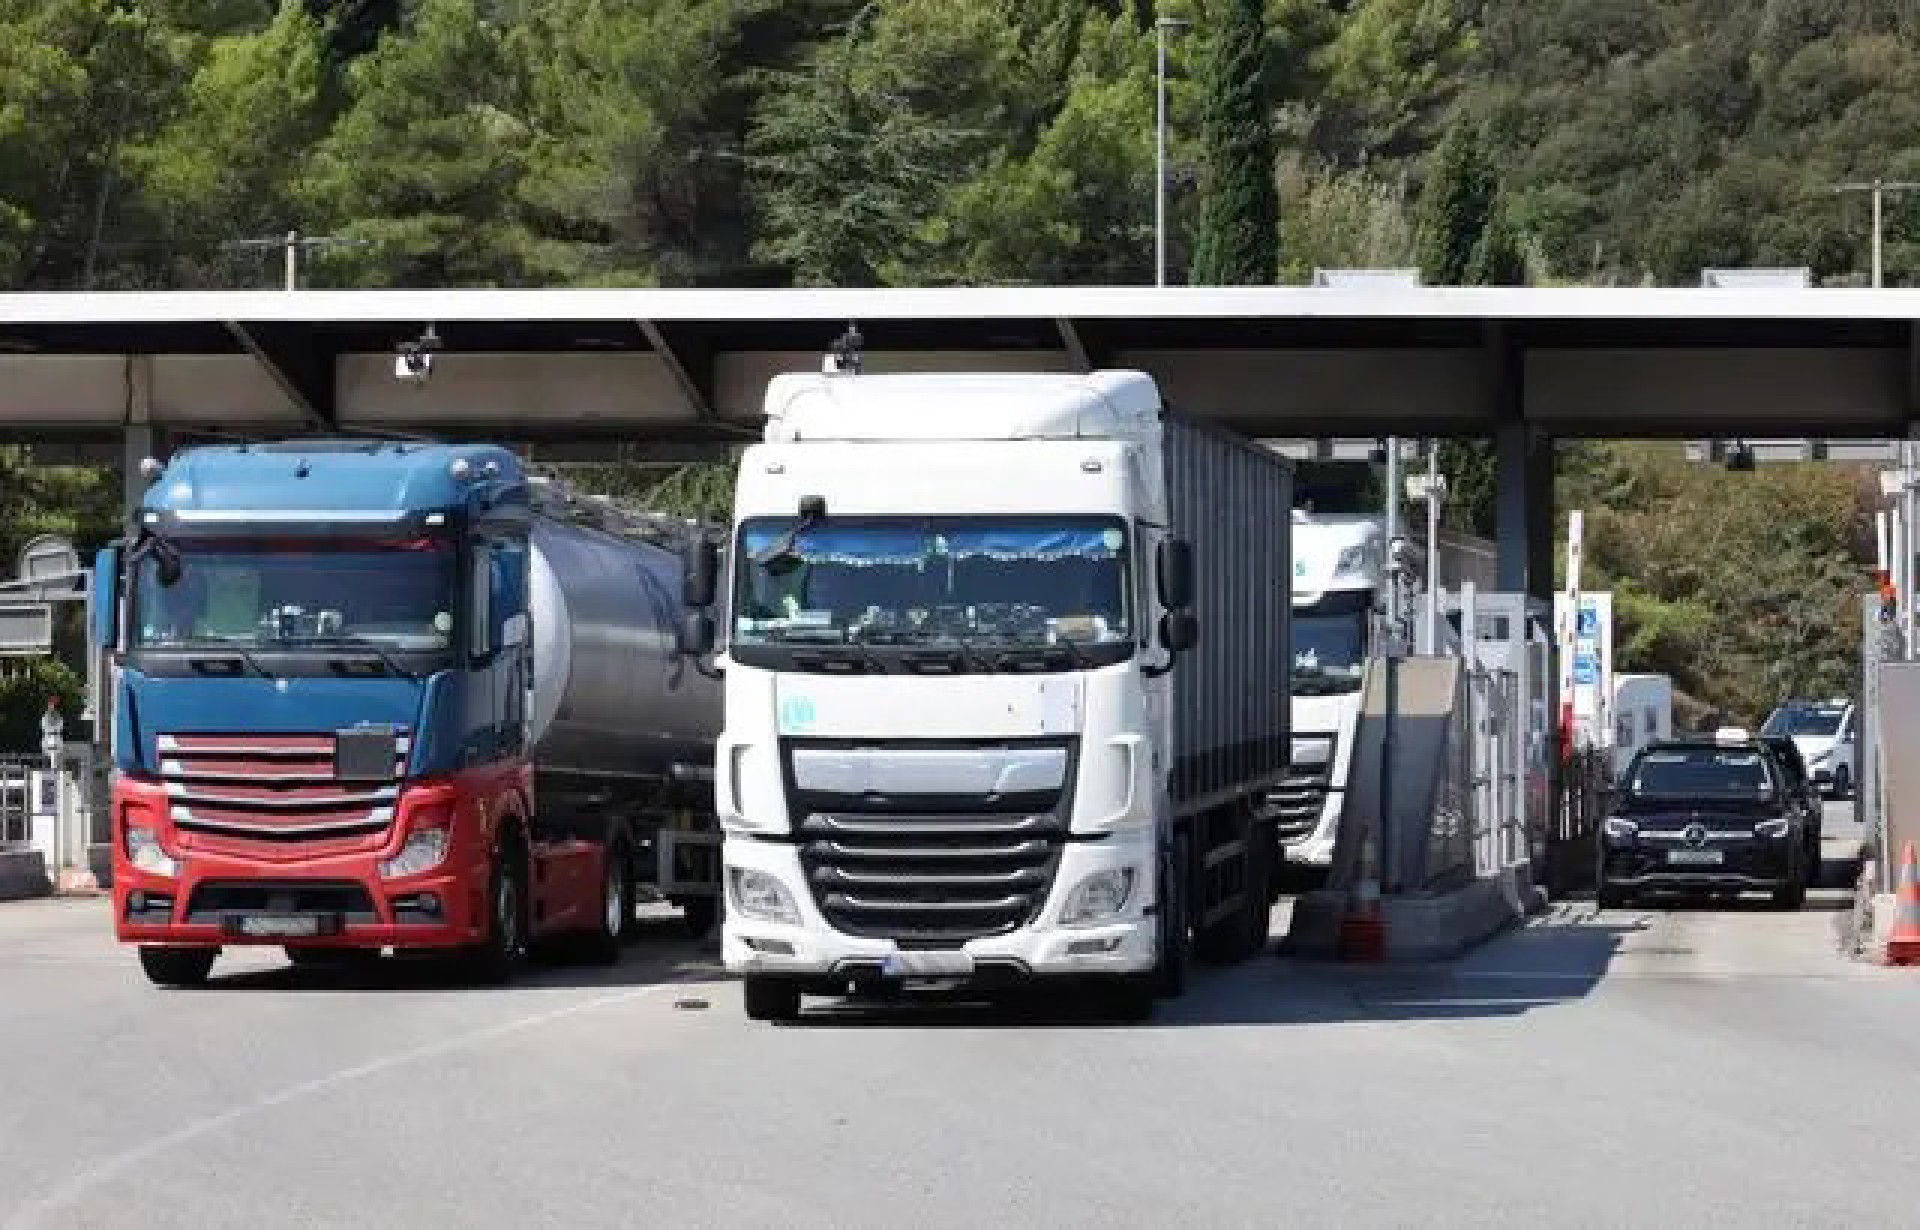 Franța. Un șofer român de camion a forțat de 115 ori barierele din stația de taxare de pe autostradă